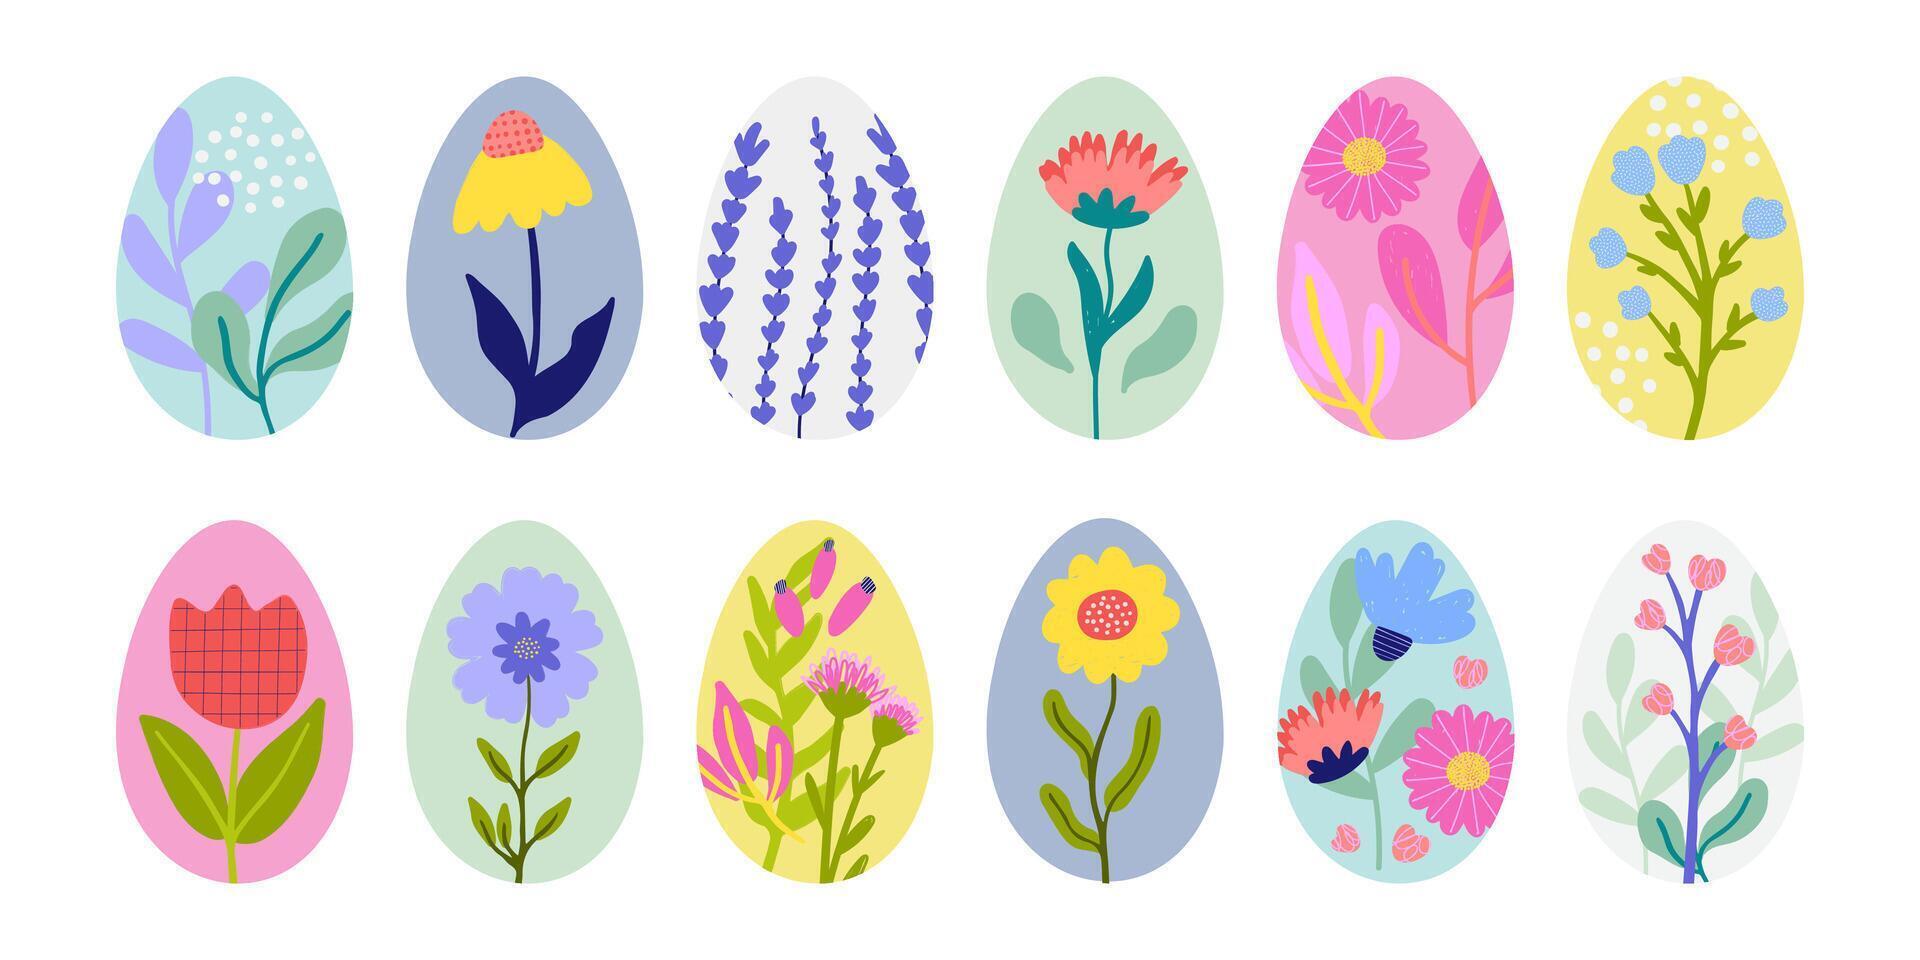 Pascua de Resurrección huevos decorado de resumen mano dibujado flores vector conjunto